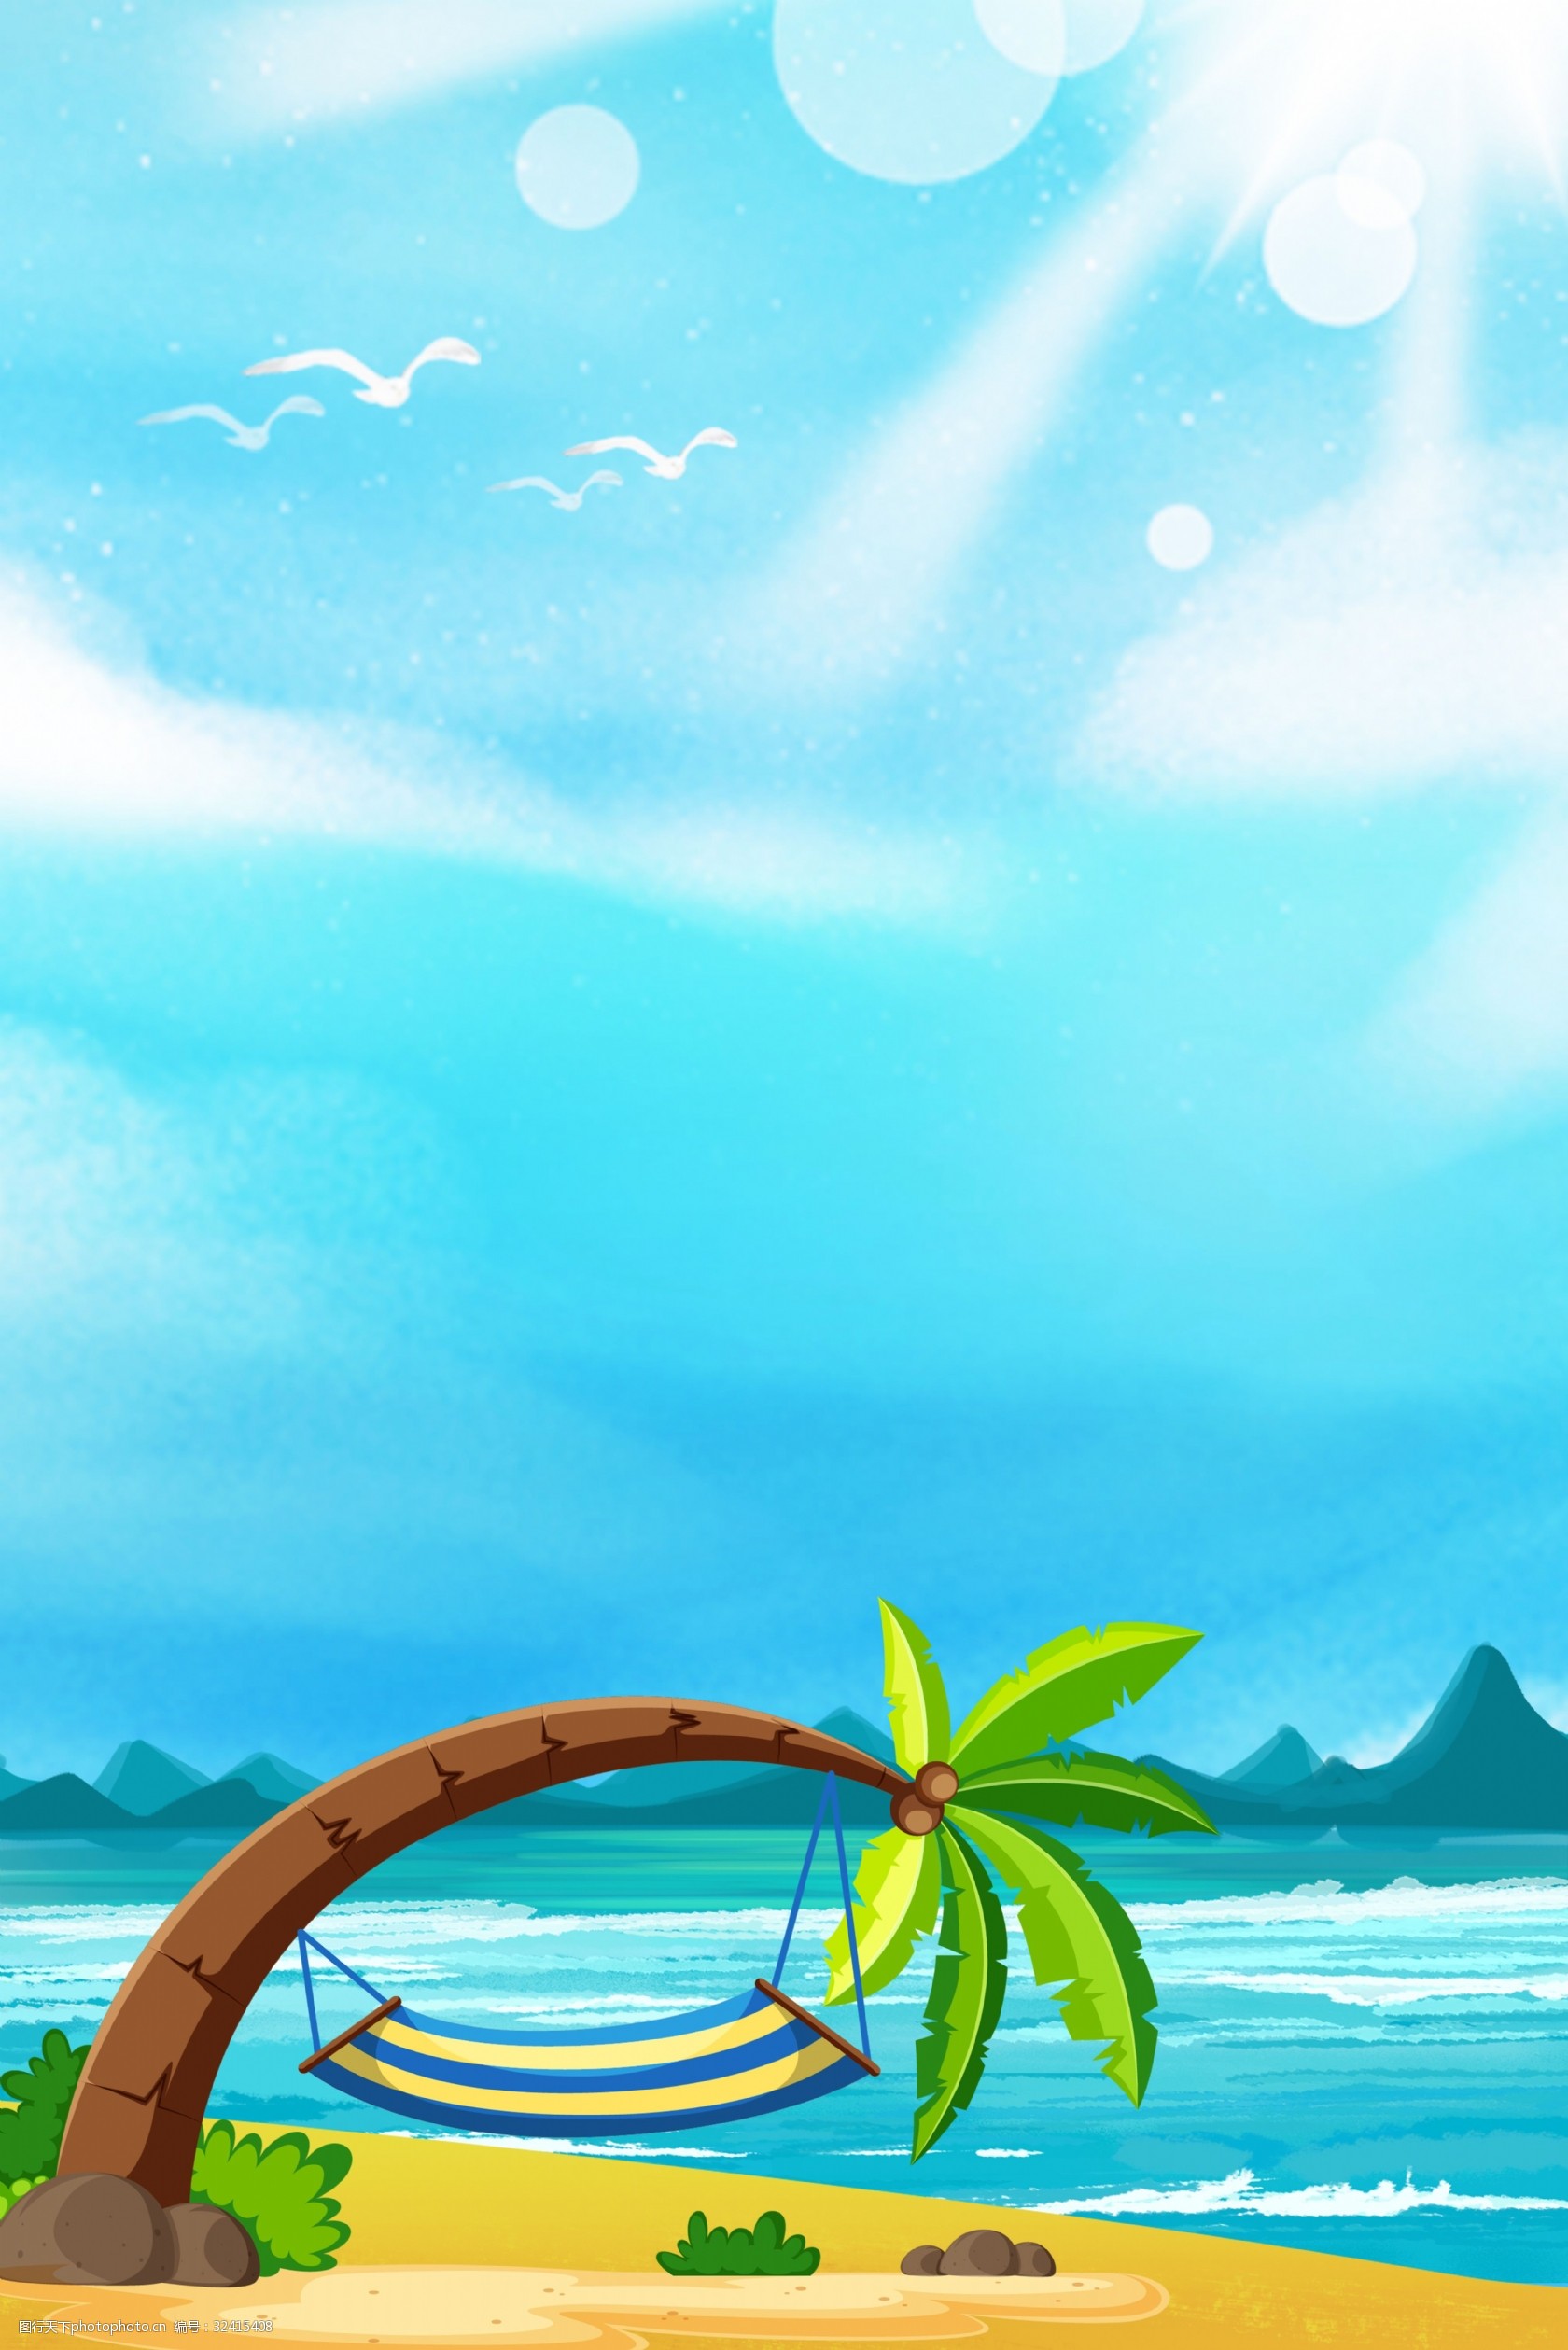 关键词:海边风景创意背景合成 海边 简约 卡通 椰子树 海岛 山水 海边